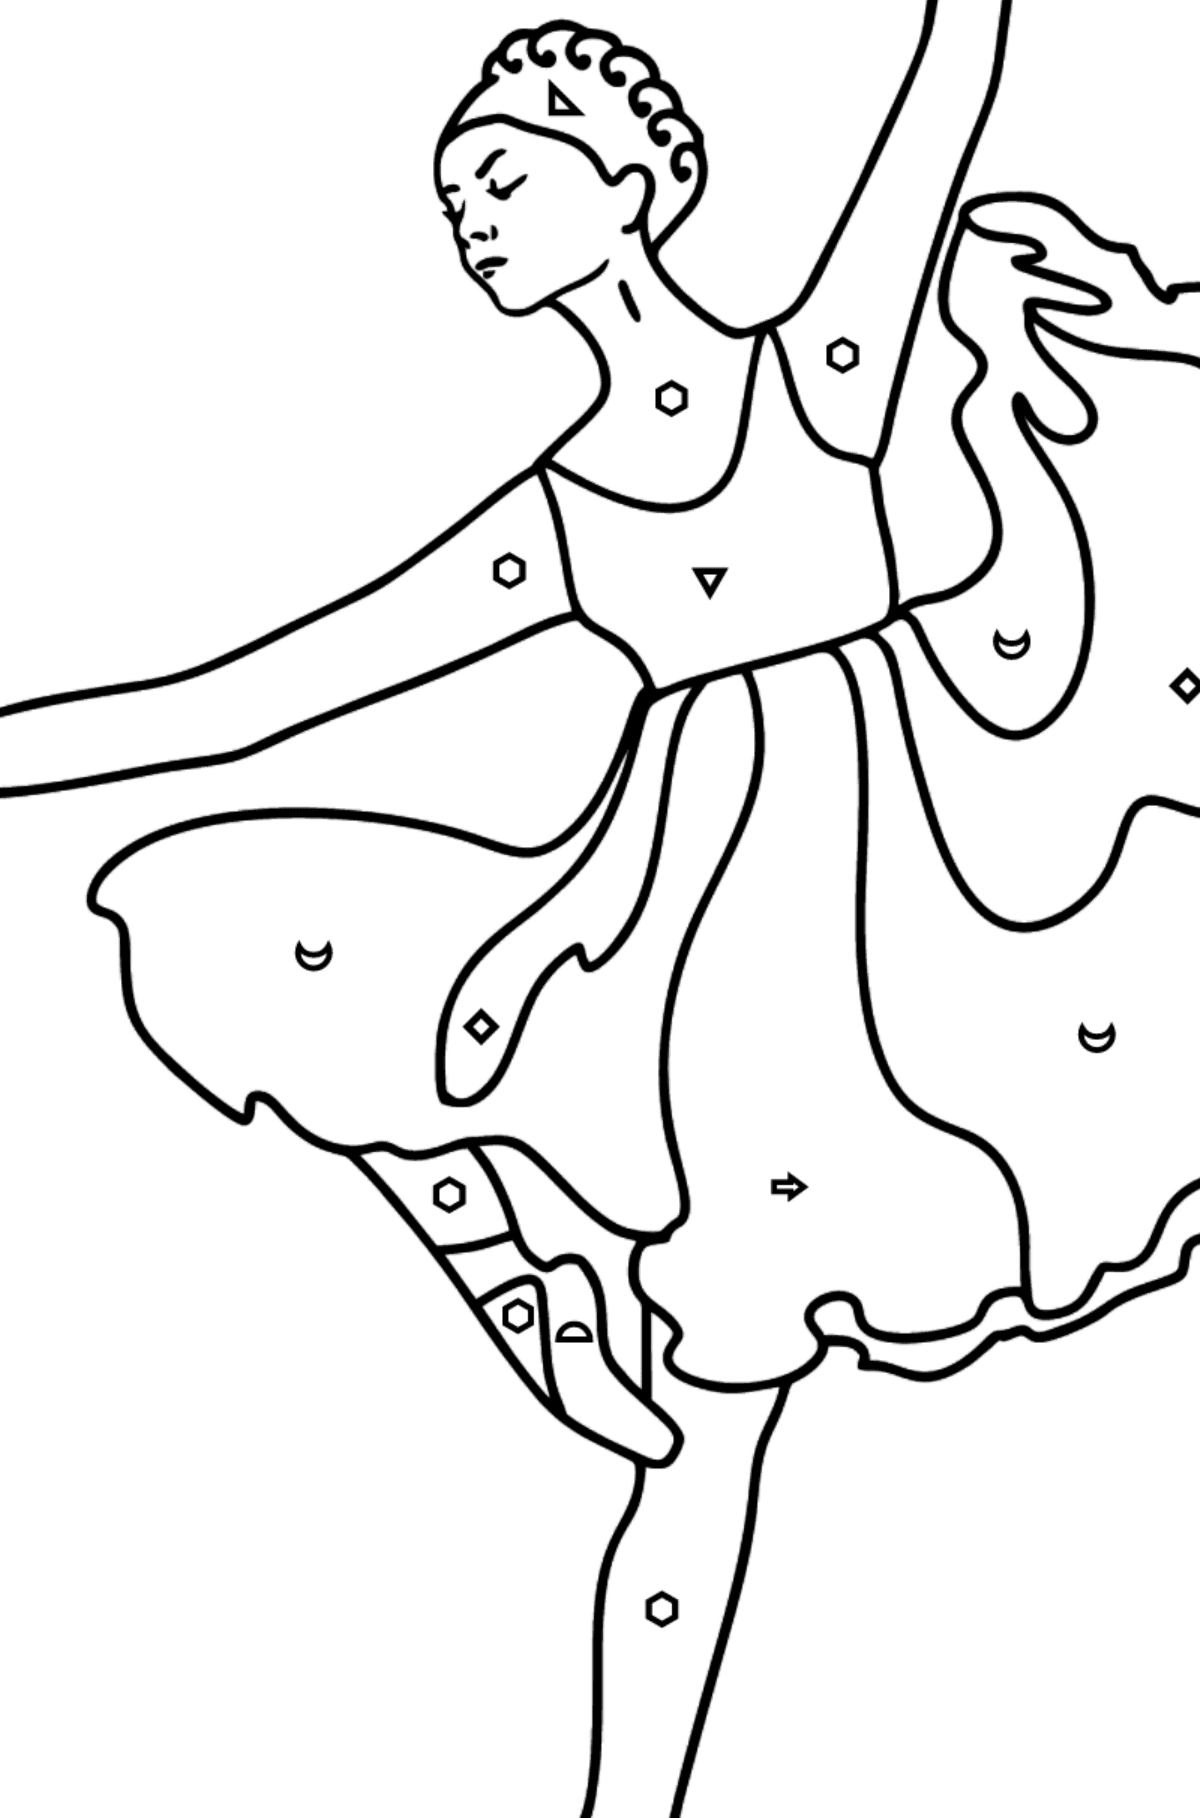 Ballerina i lilla kjole tegning til fargelegging - Fargelegge etter symboler og geometriske former for barn